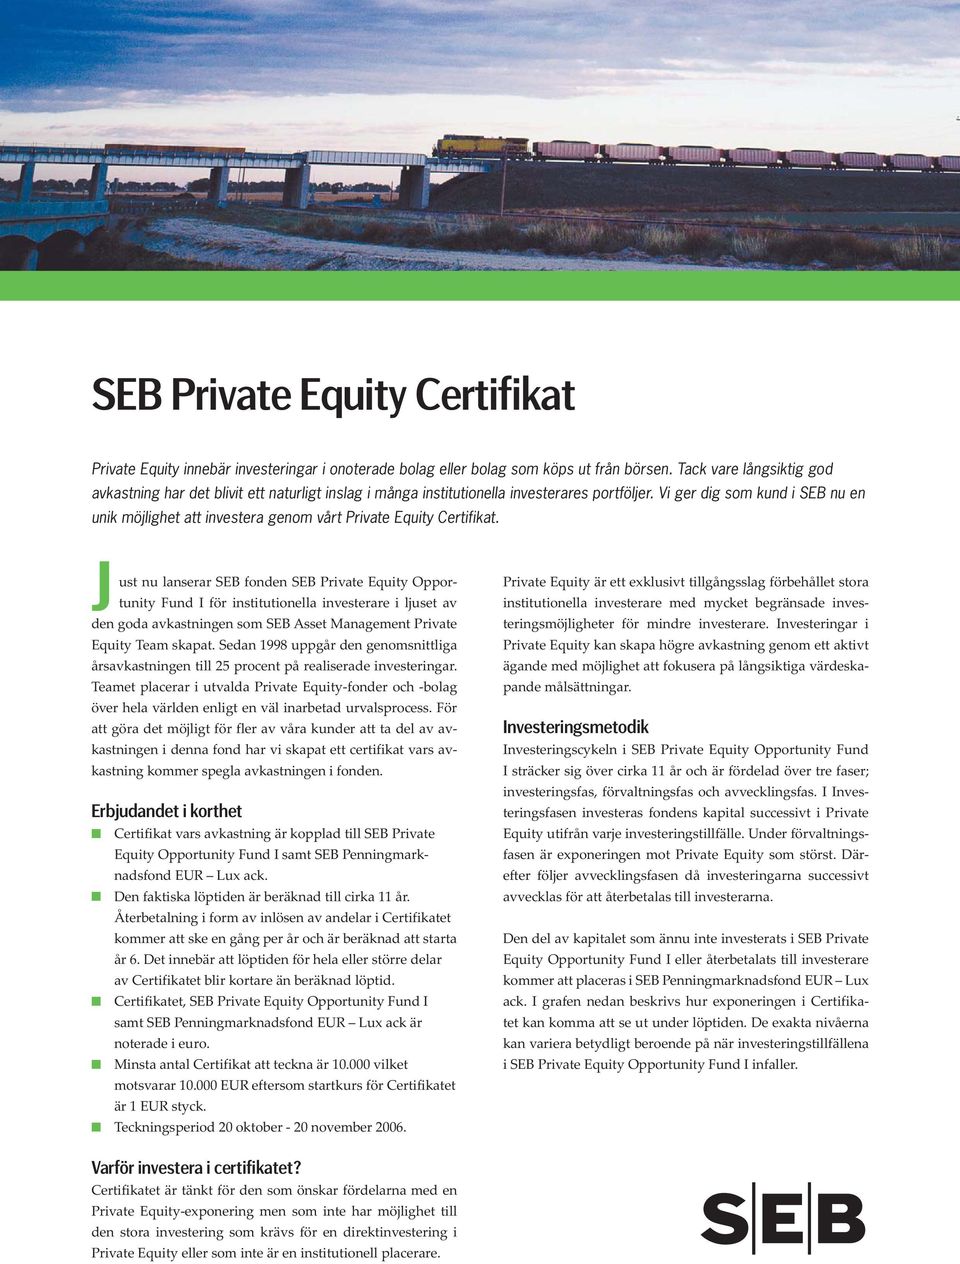 Vi ger dig som kund i SEB nu en unik möjlighet att investera genom vårt Private Equity Certifikat.